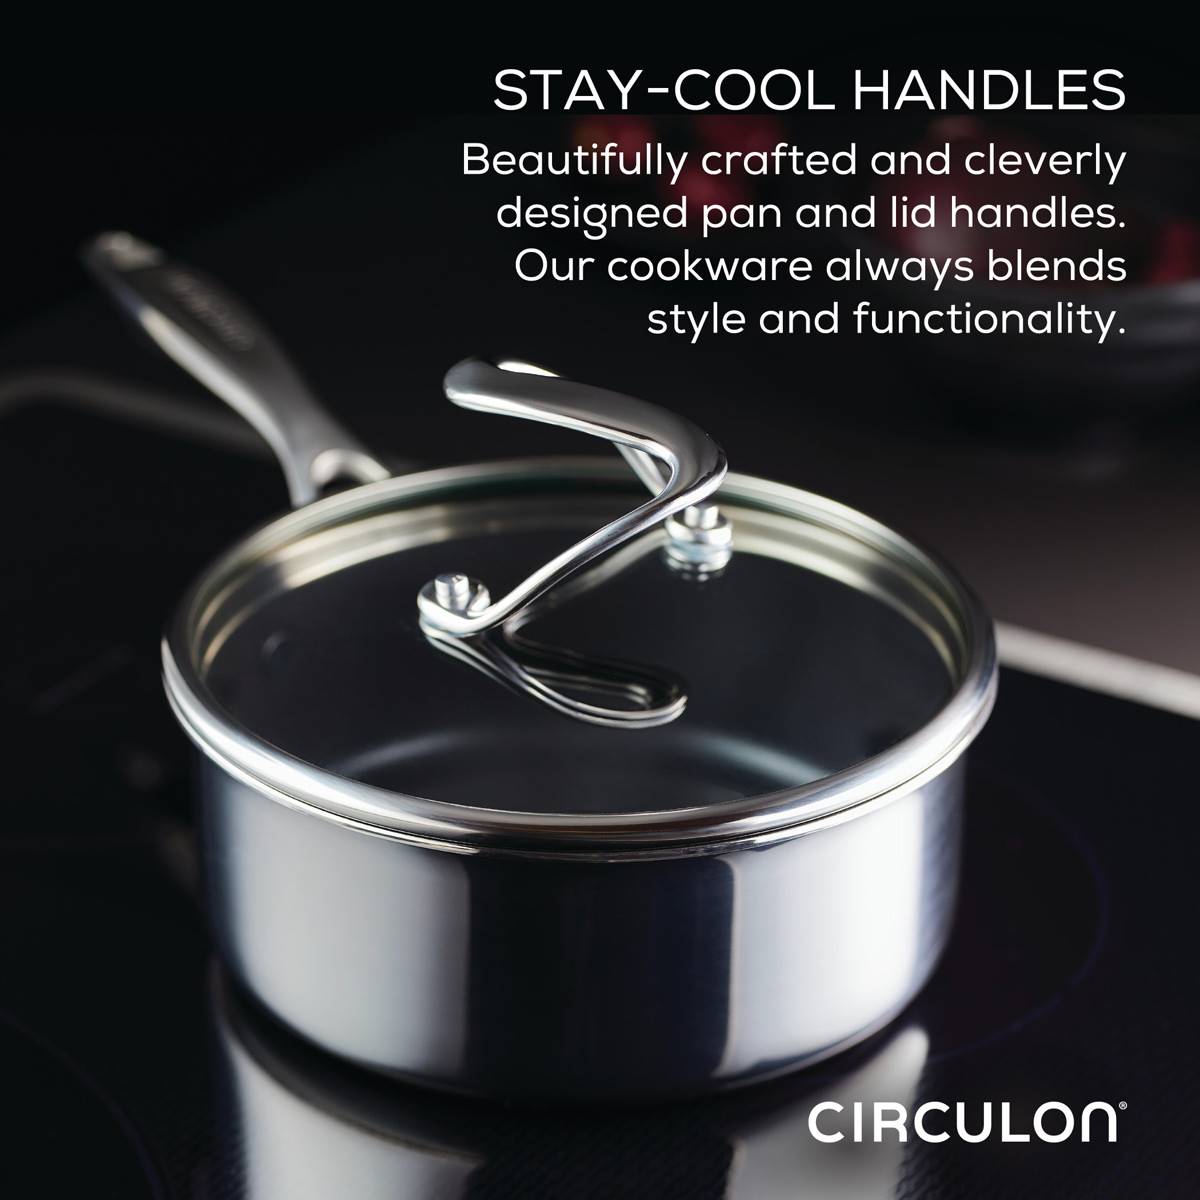 Circulon(R) 2qt. Stainless Steel Saucepan